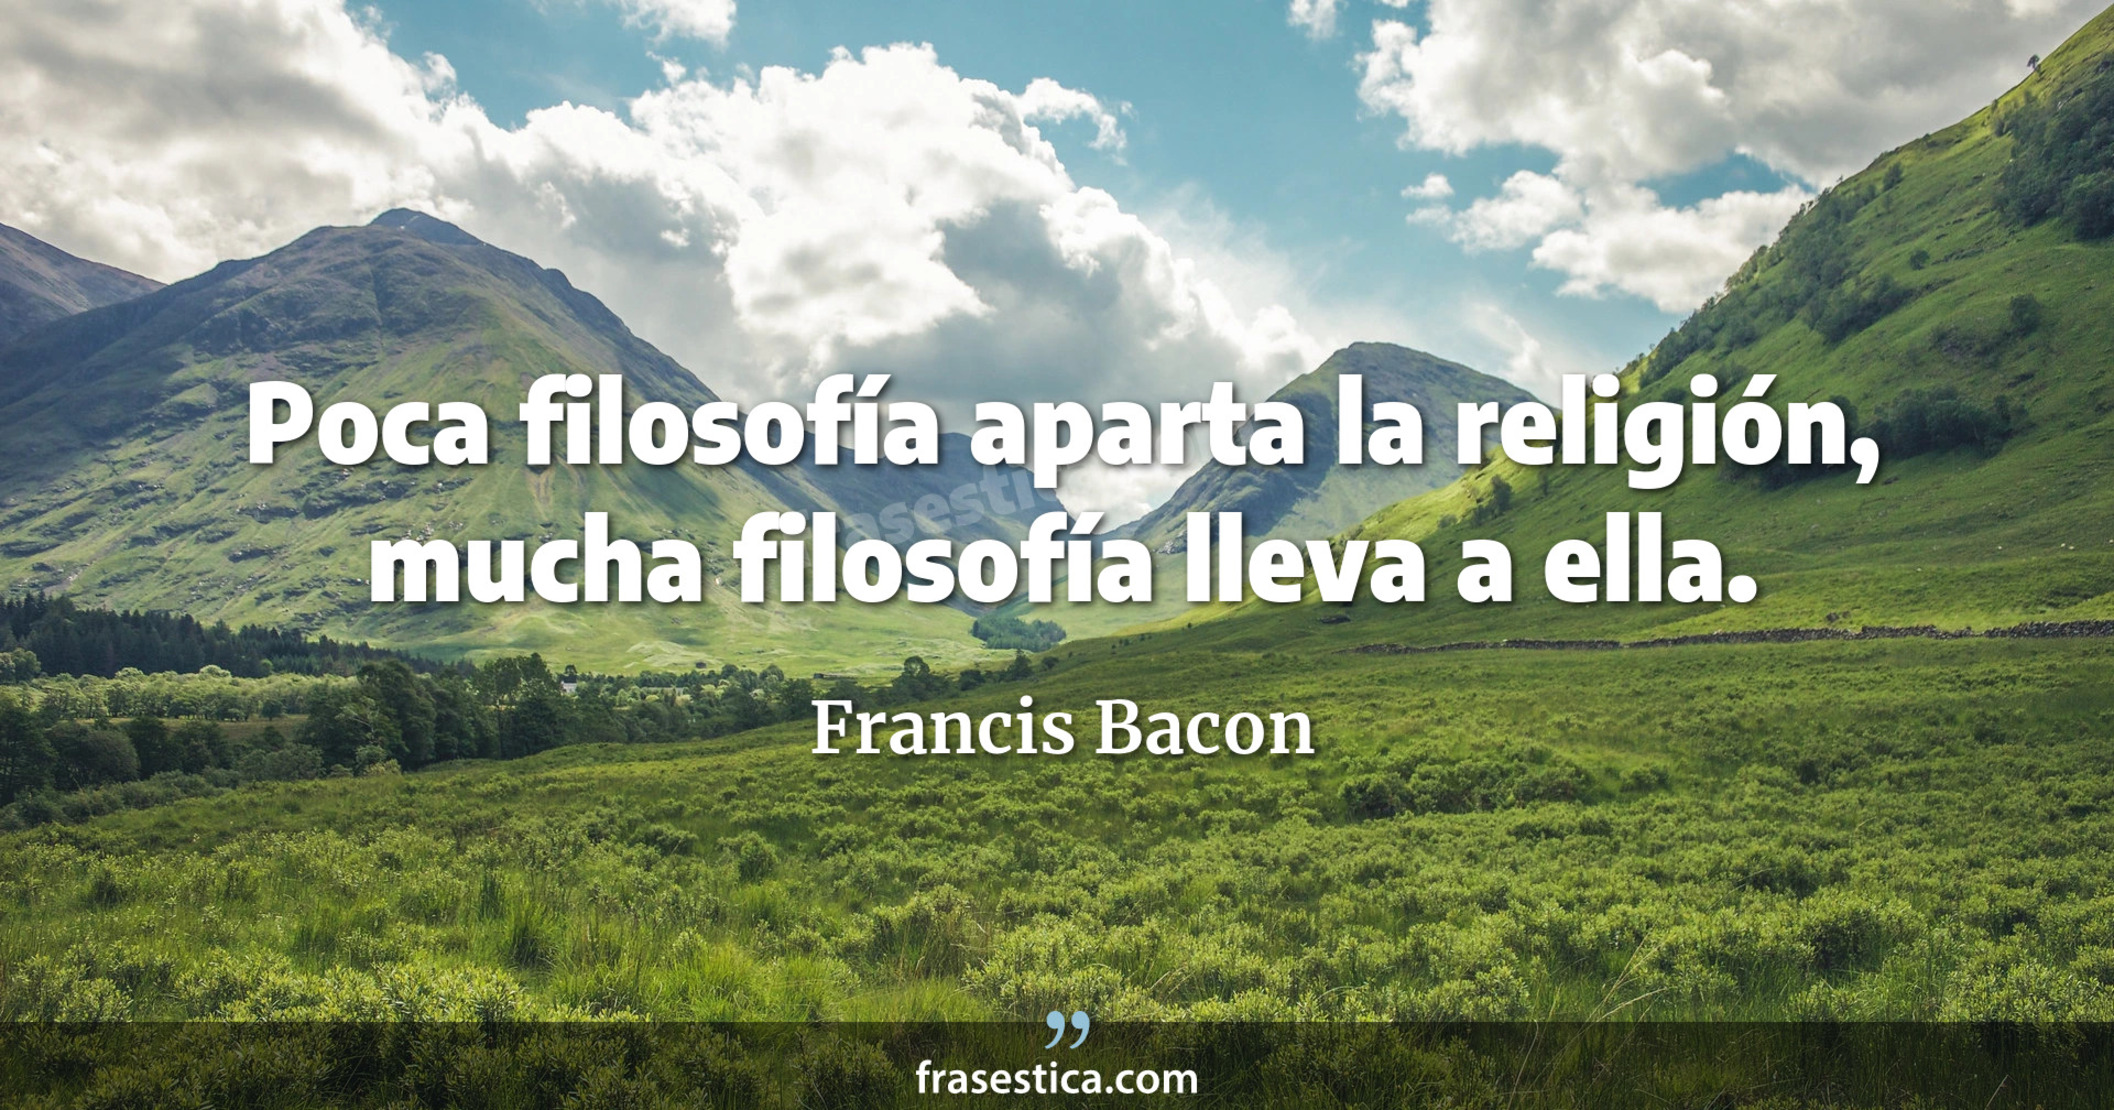 Poca filosofía aparta la religión, mucha filosofía lleva a ella. - Francis Bacon